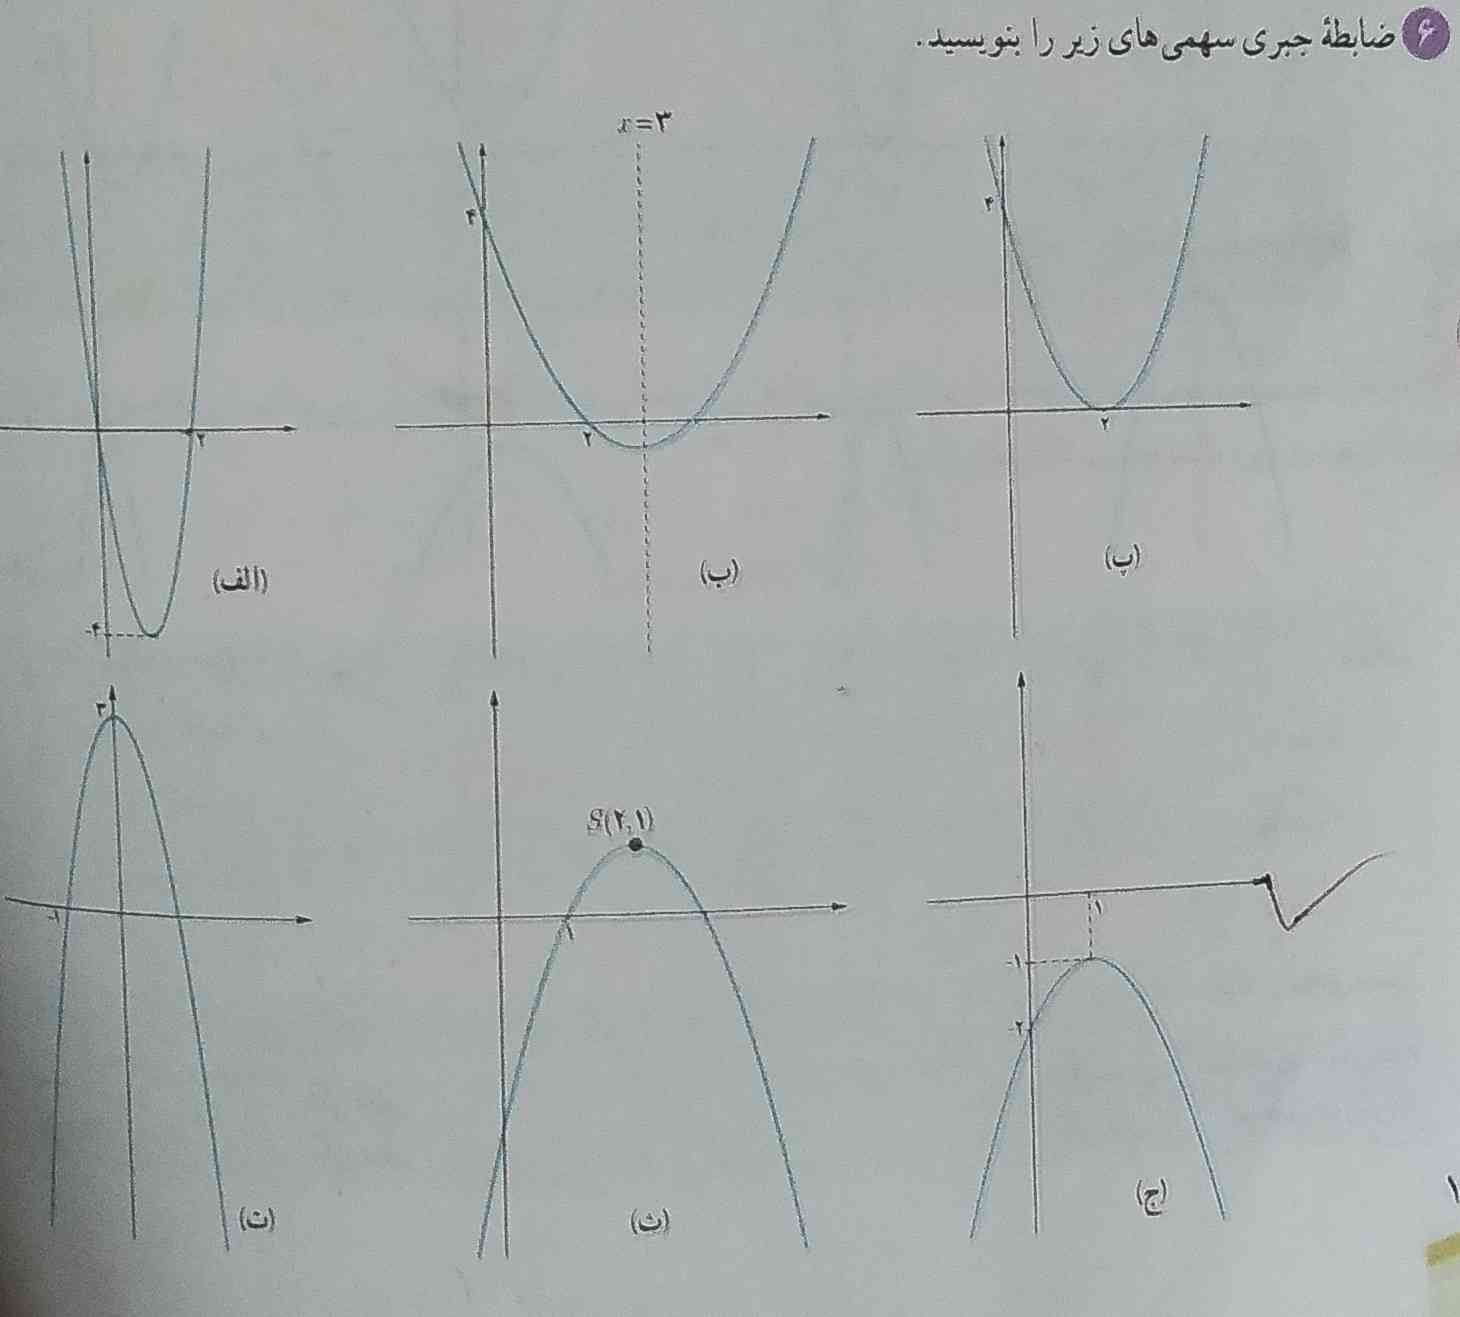 سلام
یه فرمول می خواستم که همه ضابطه زیر را با آن نوشت